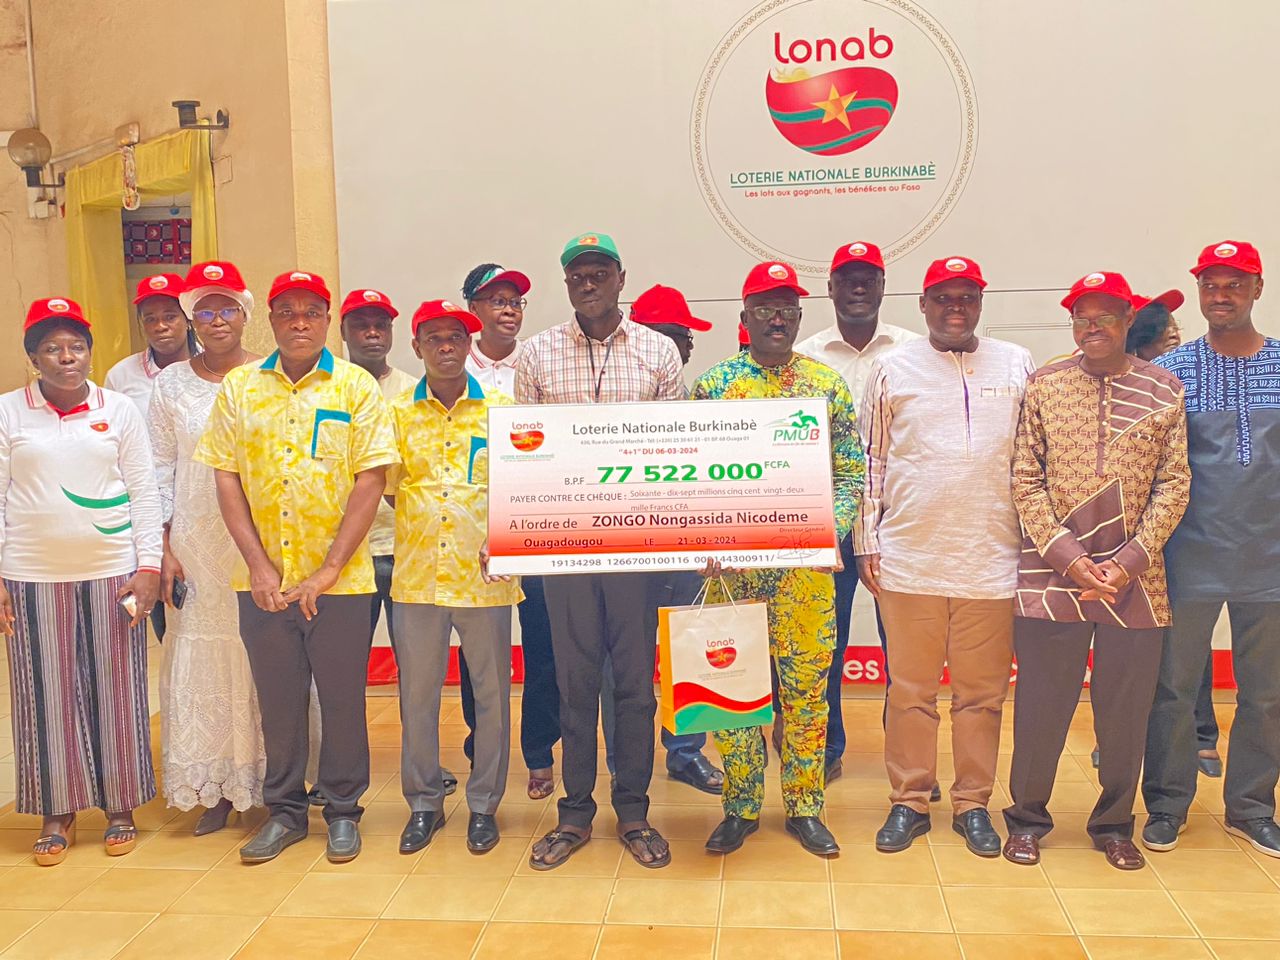 Loterie nationale burkinabè : Nongassida Nicodème Zongo remporte plus de 77 millions de FCFA avec une mise de 16 800 FCFA